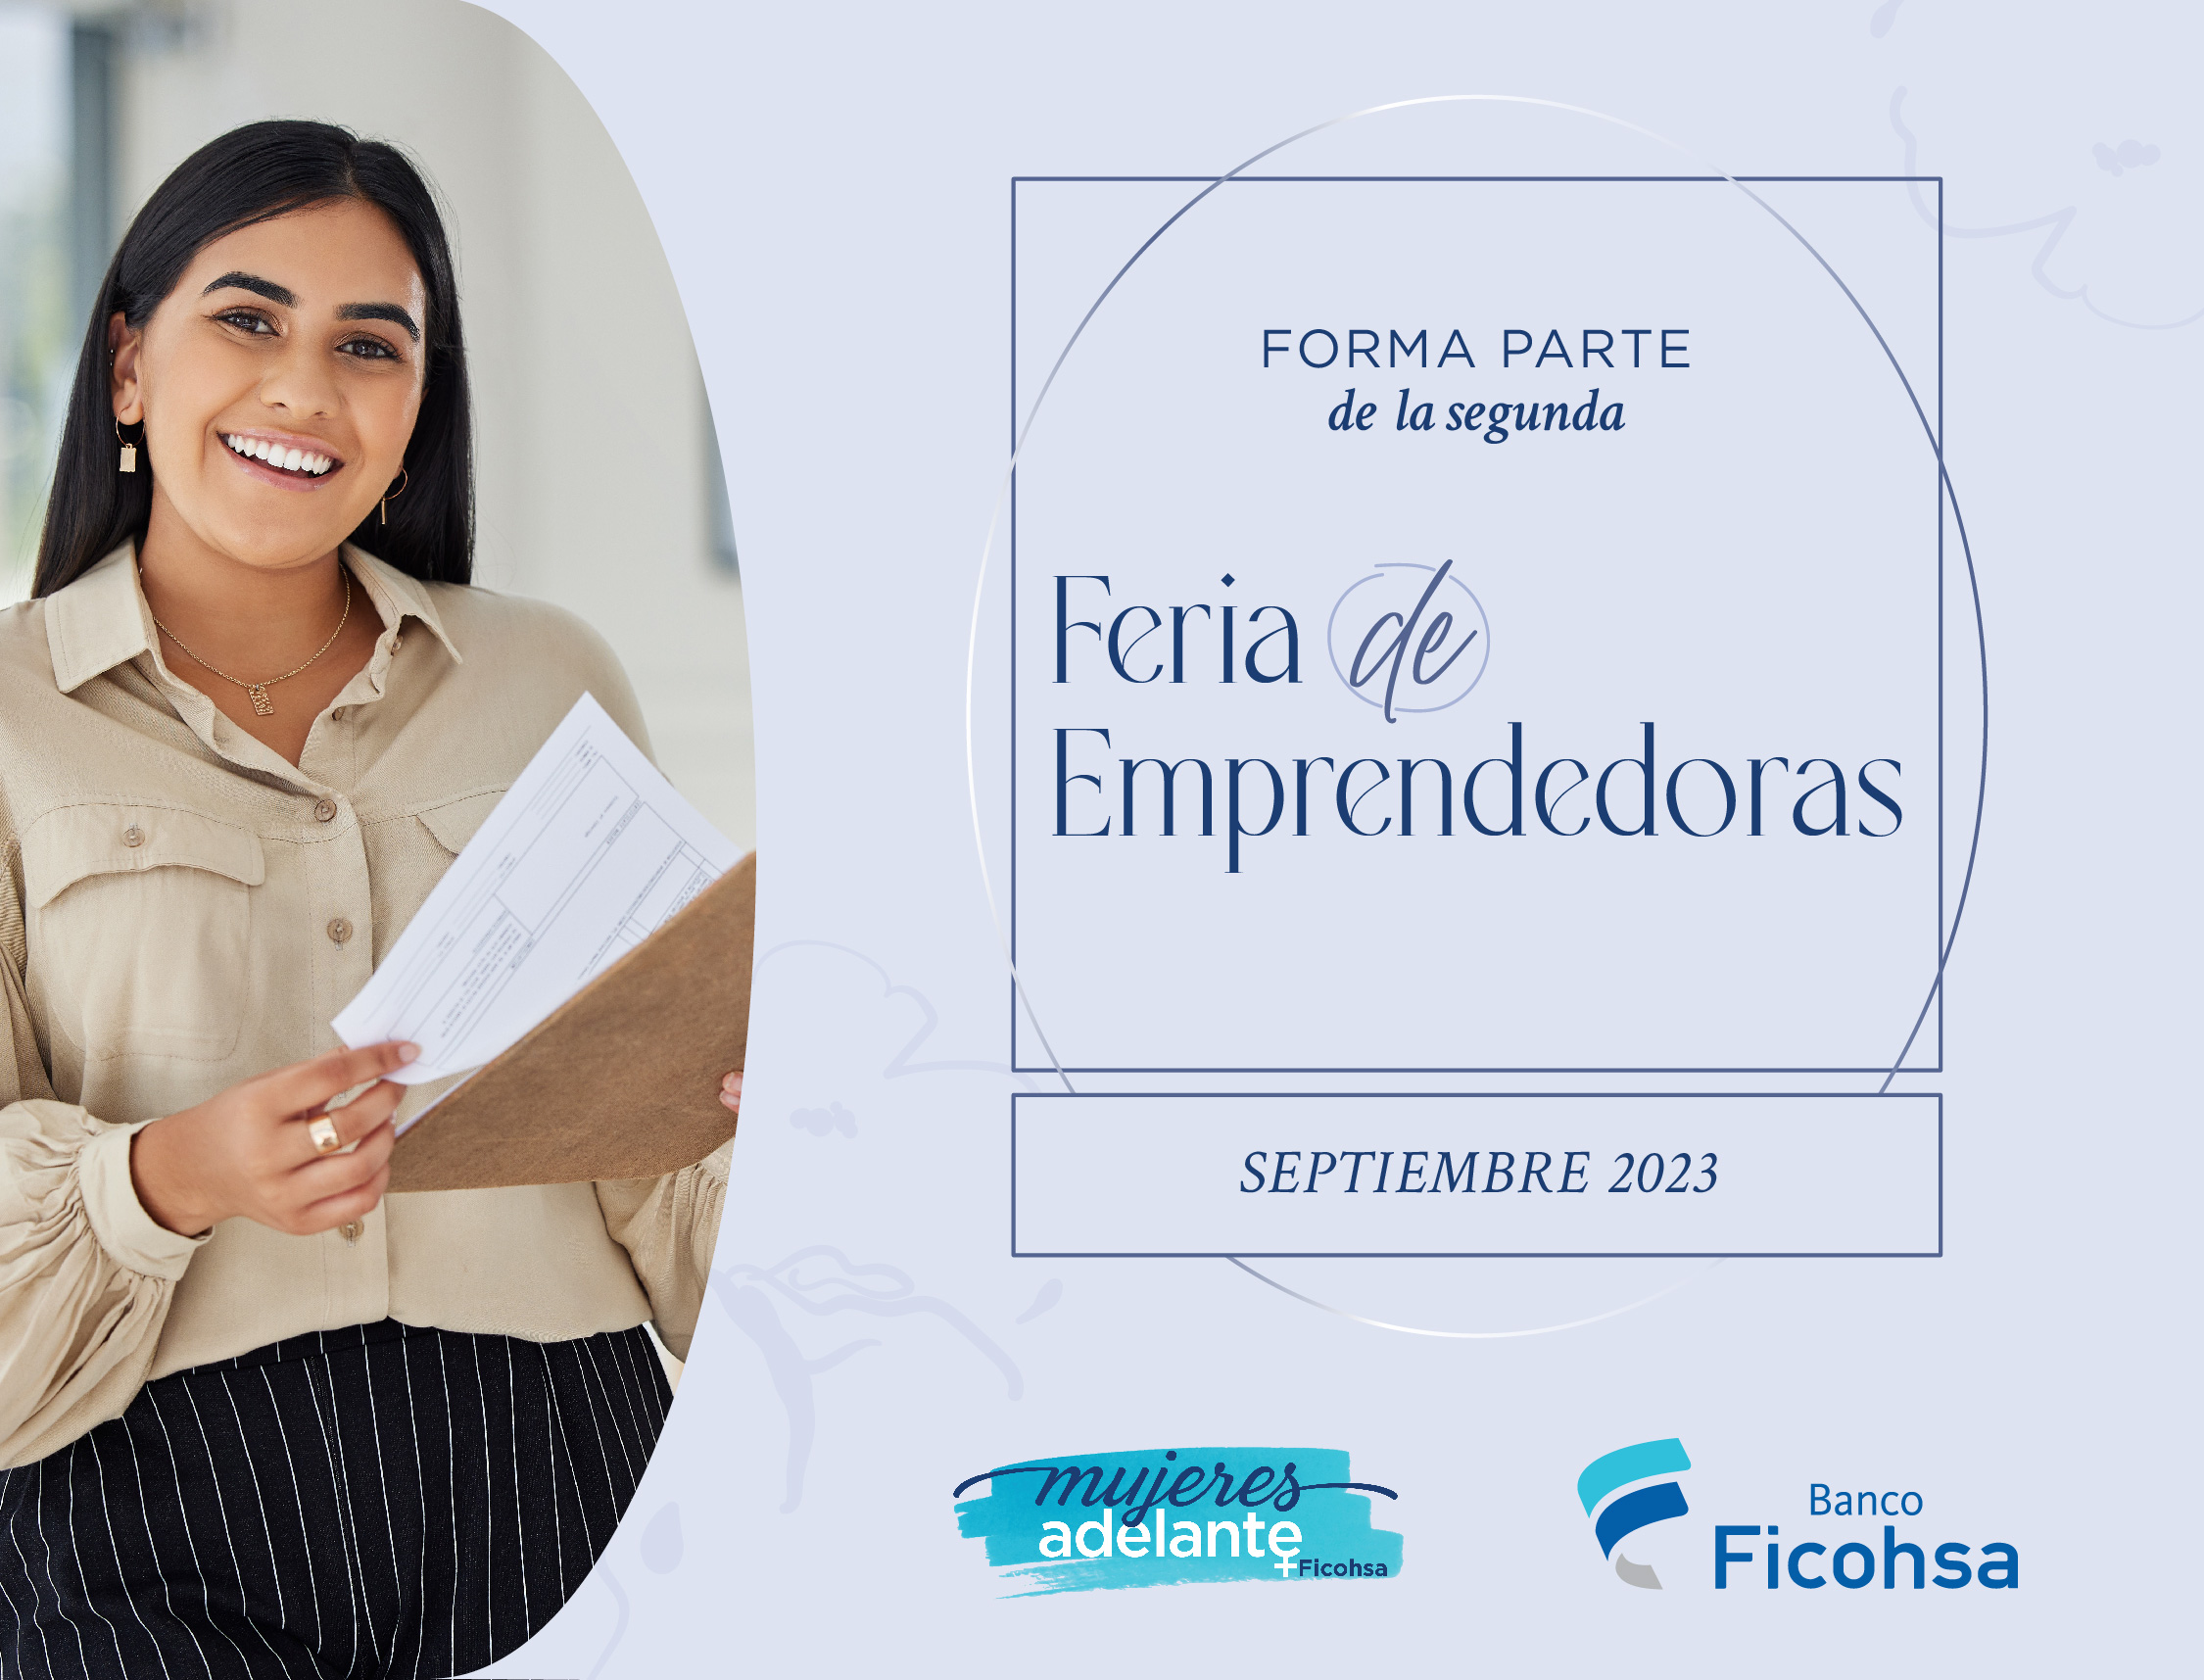 Postúlate y participa en la segunda Feria de Emprendedoras de Mujeres Adelante Ficohsa